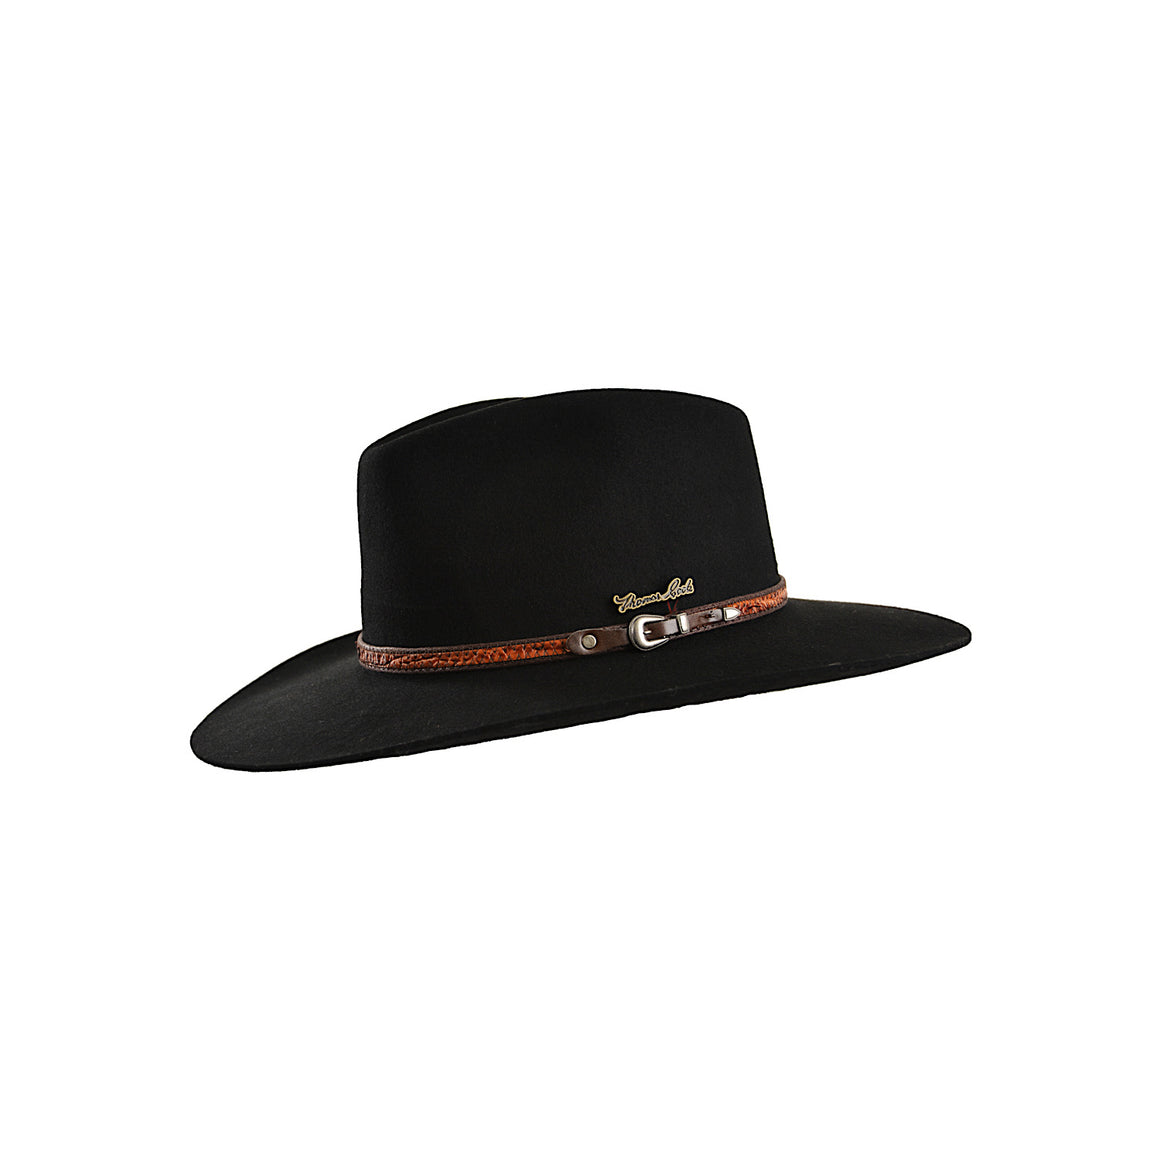 Thomas Cook Fitzroy Wool Felt Hat Black